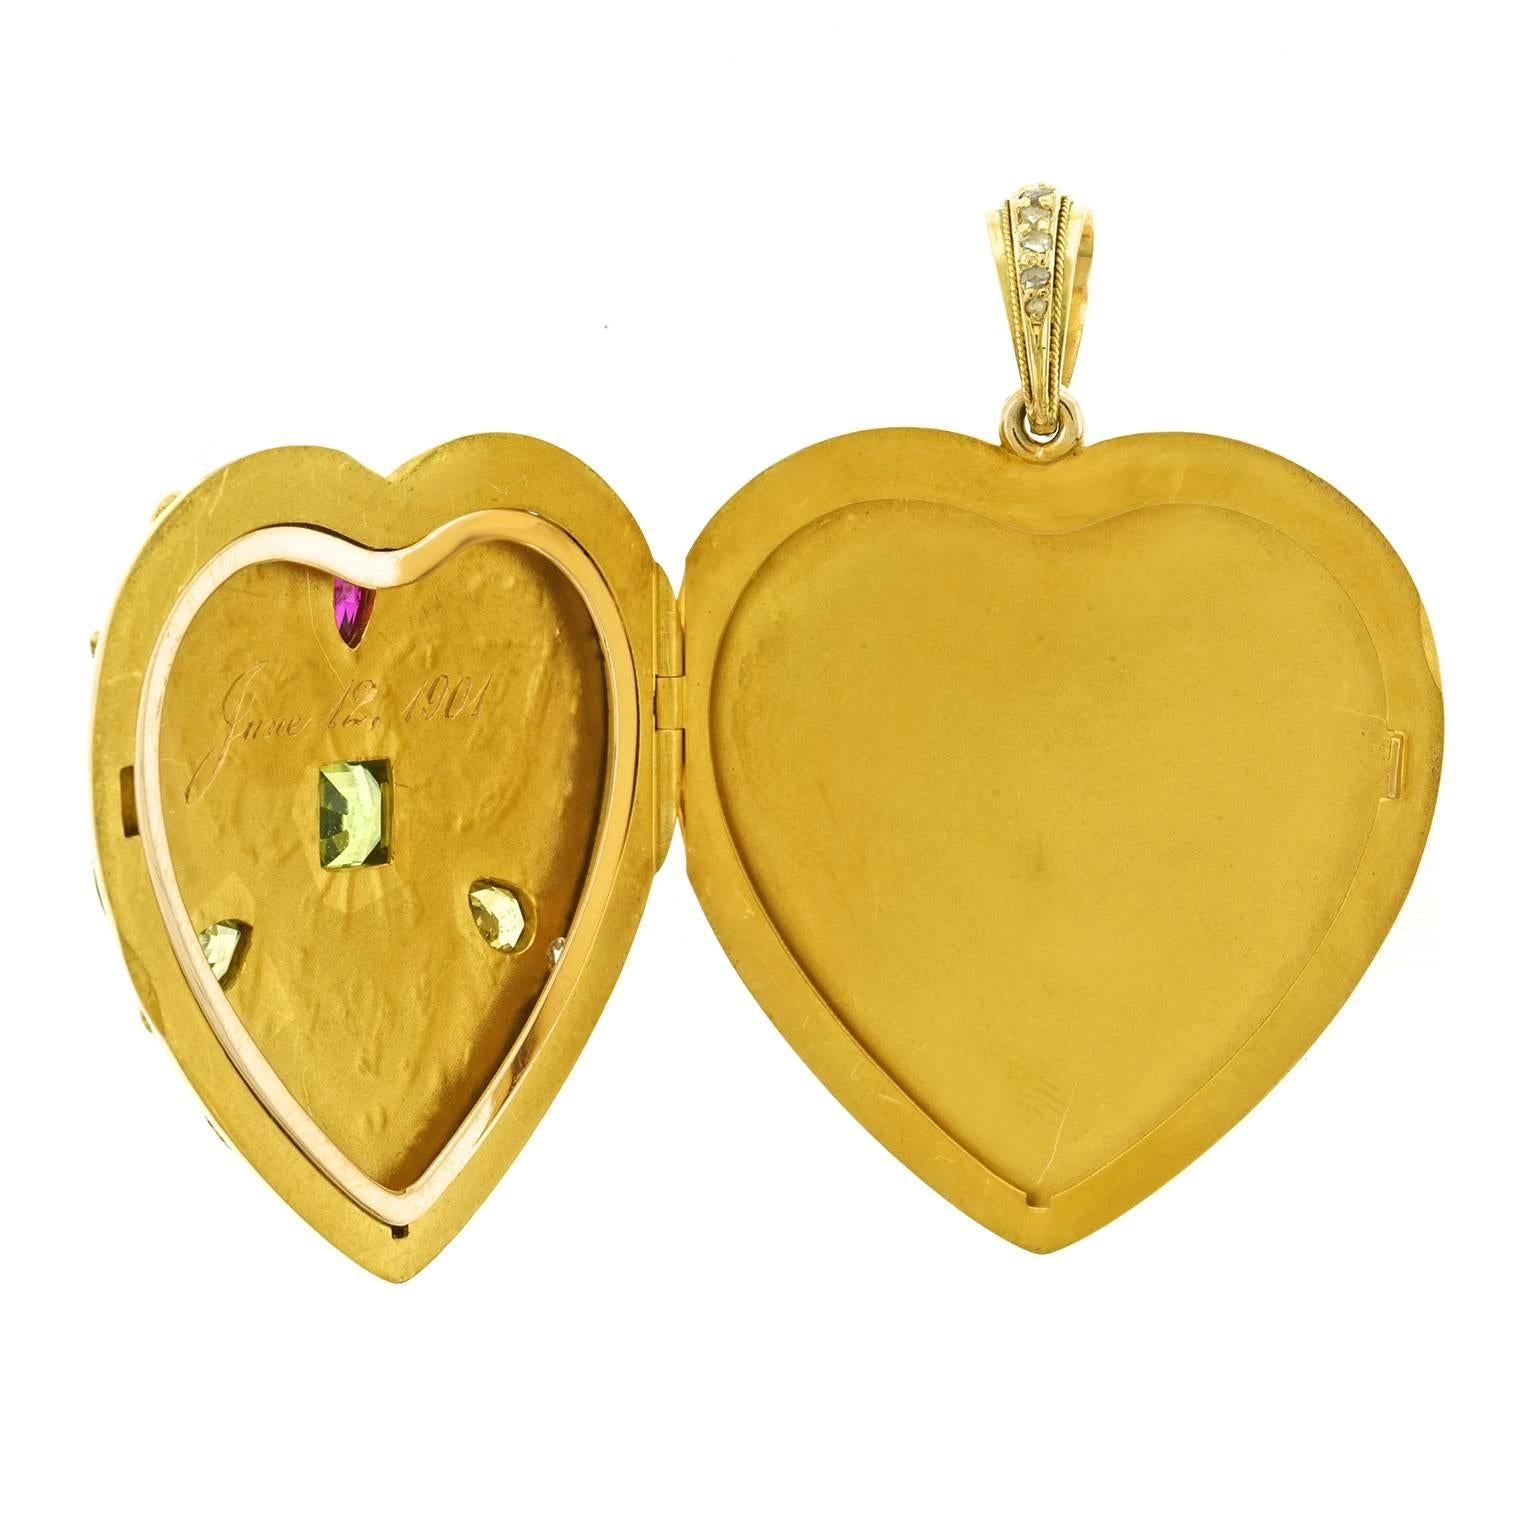 Spectacular Renaissance Revival Gold Heart Locket 2